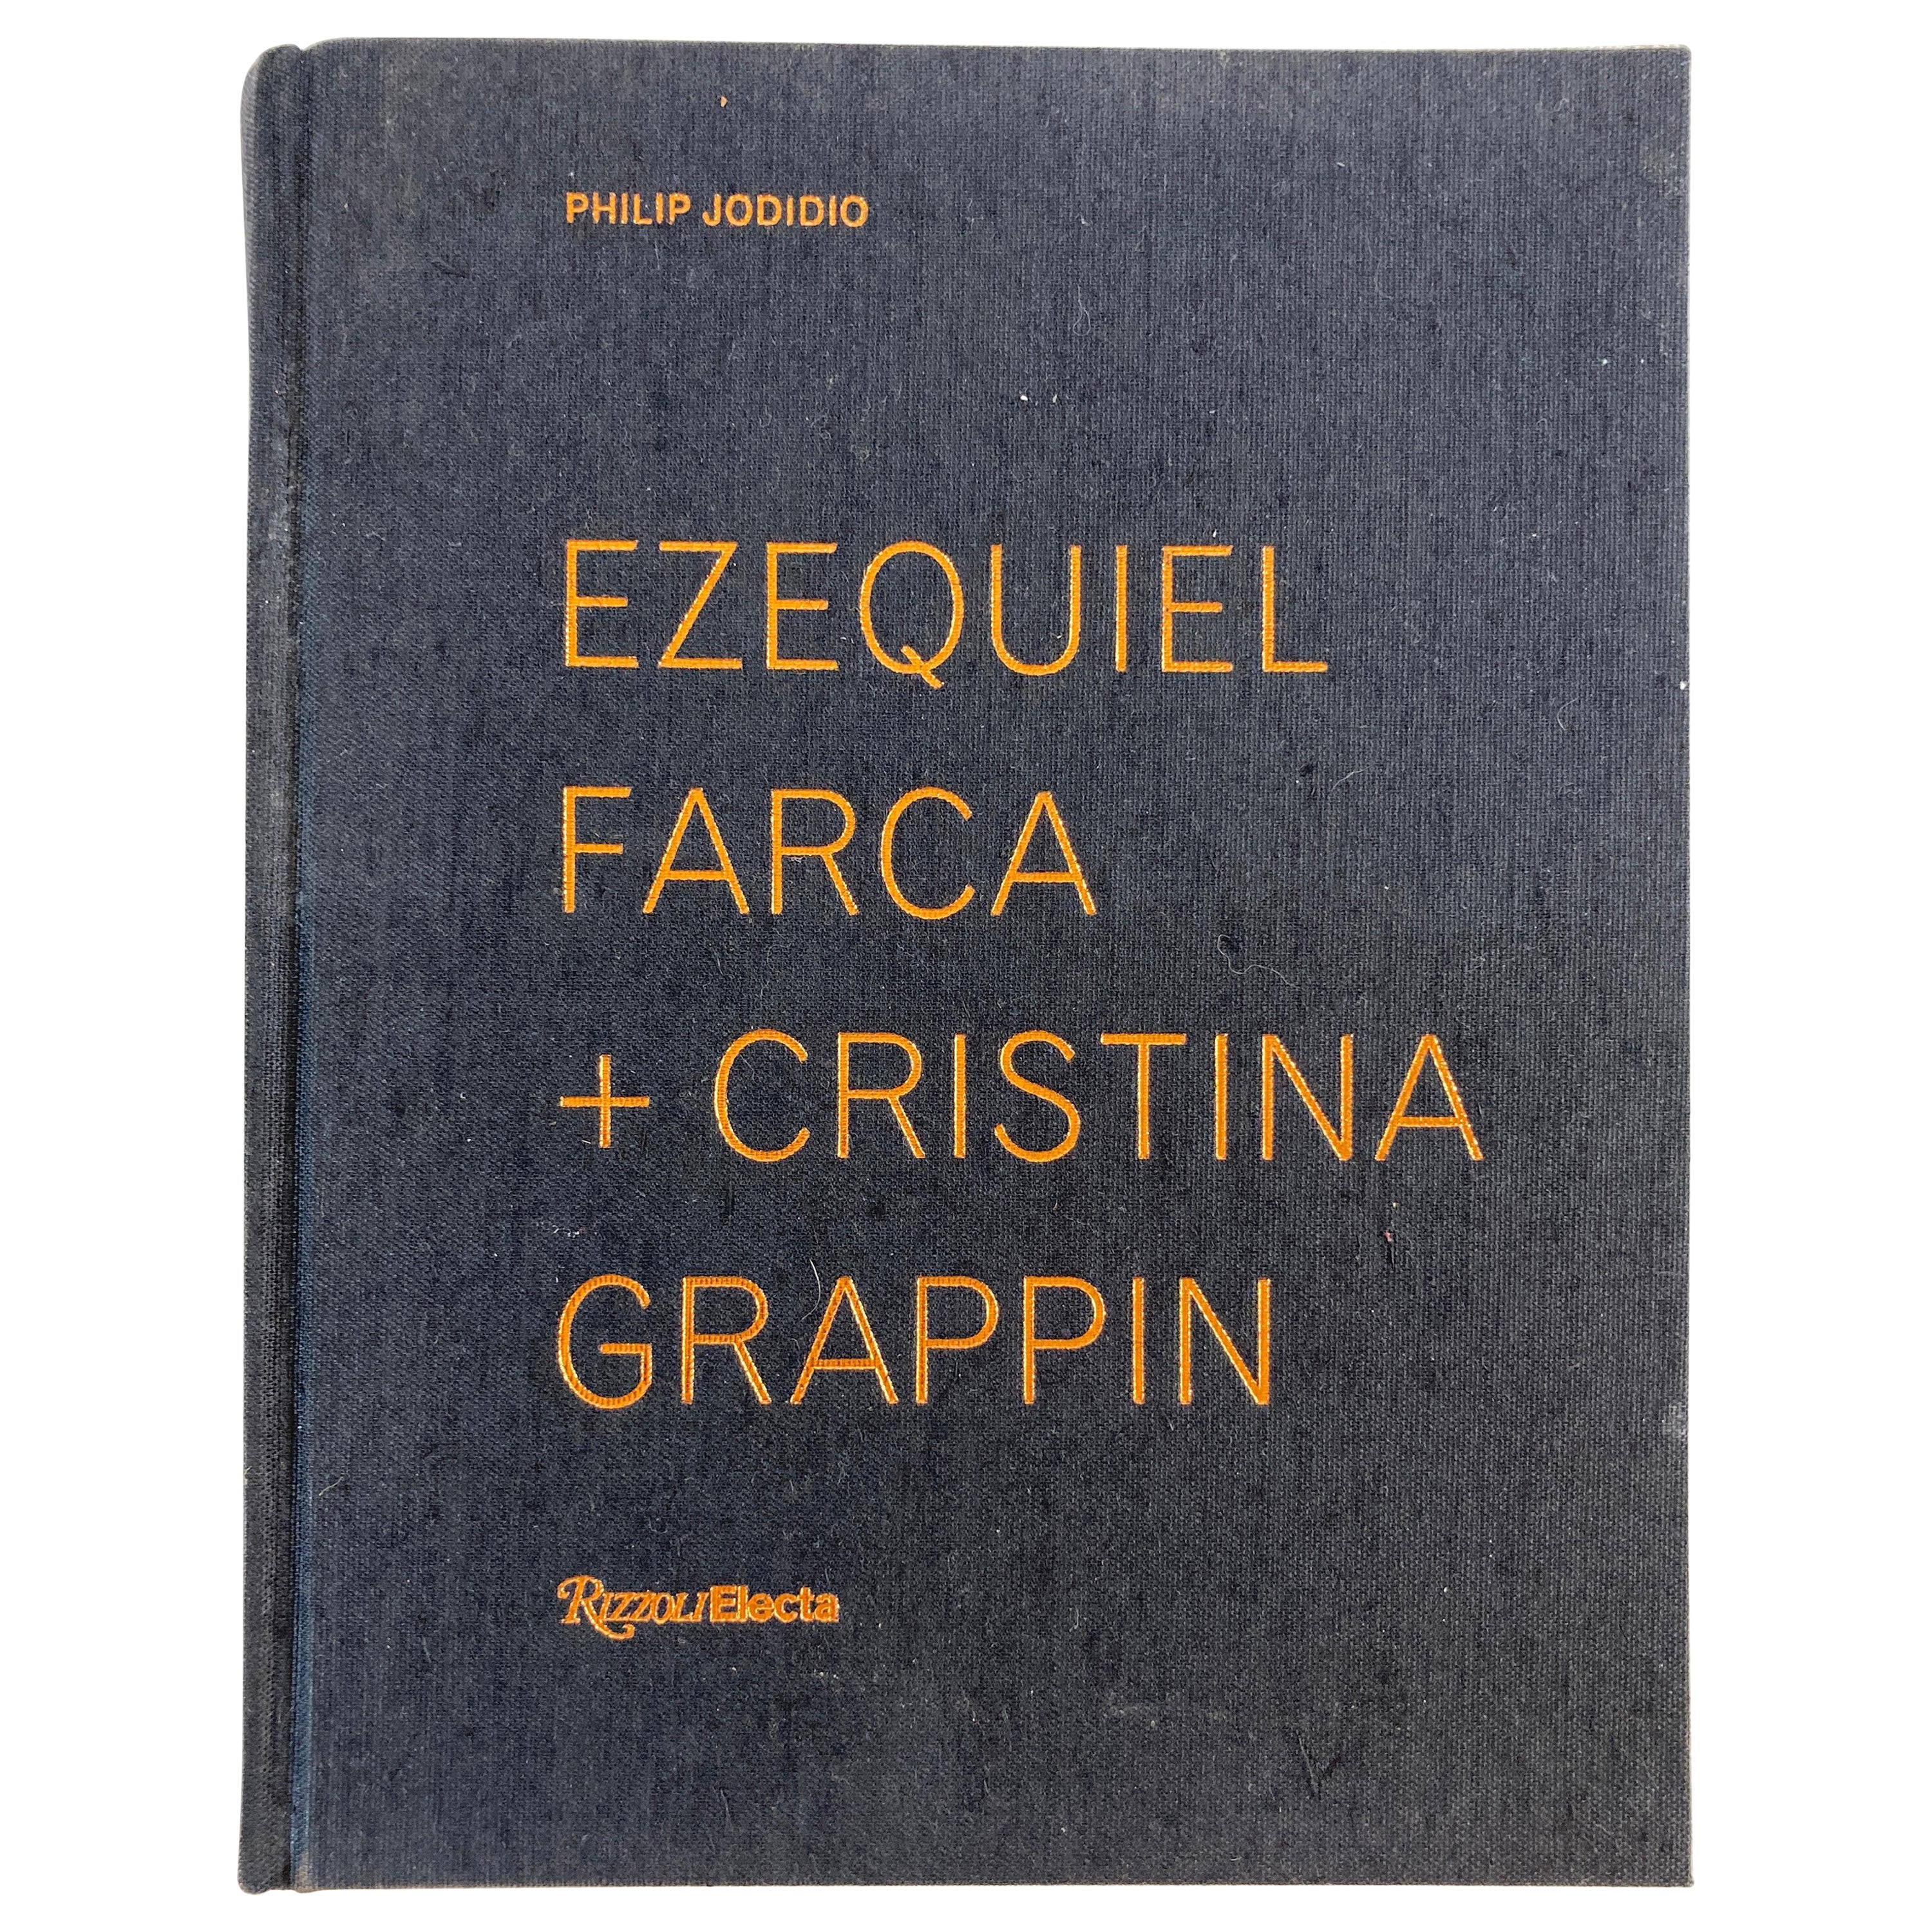 Ezequiel Farca + Cristina Grappin Architecture Interior Design Monograph Book For Sale